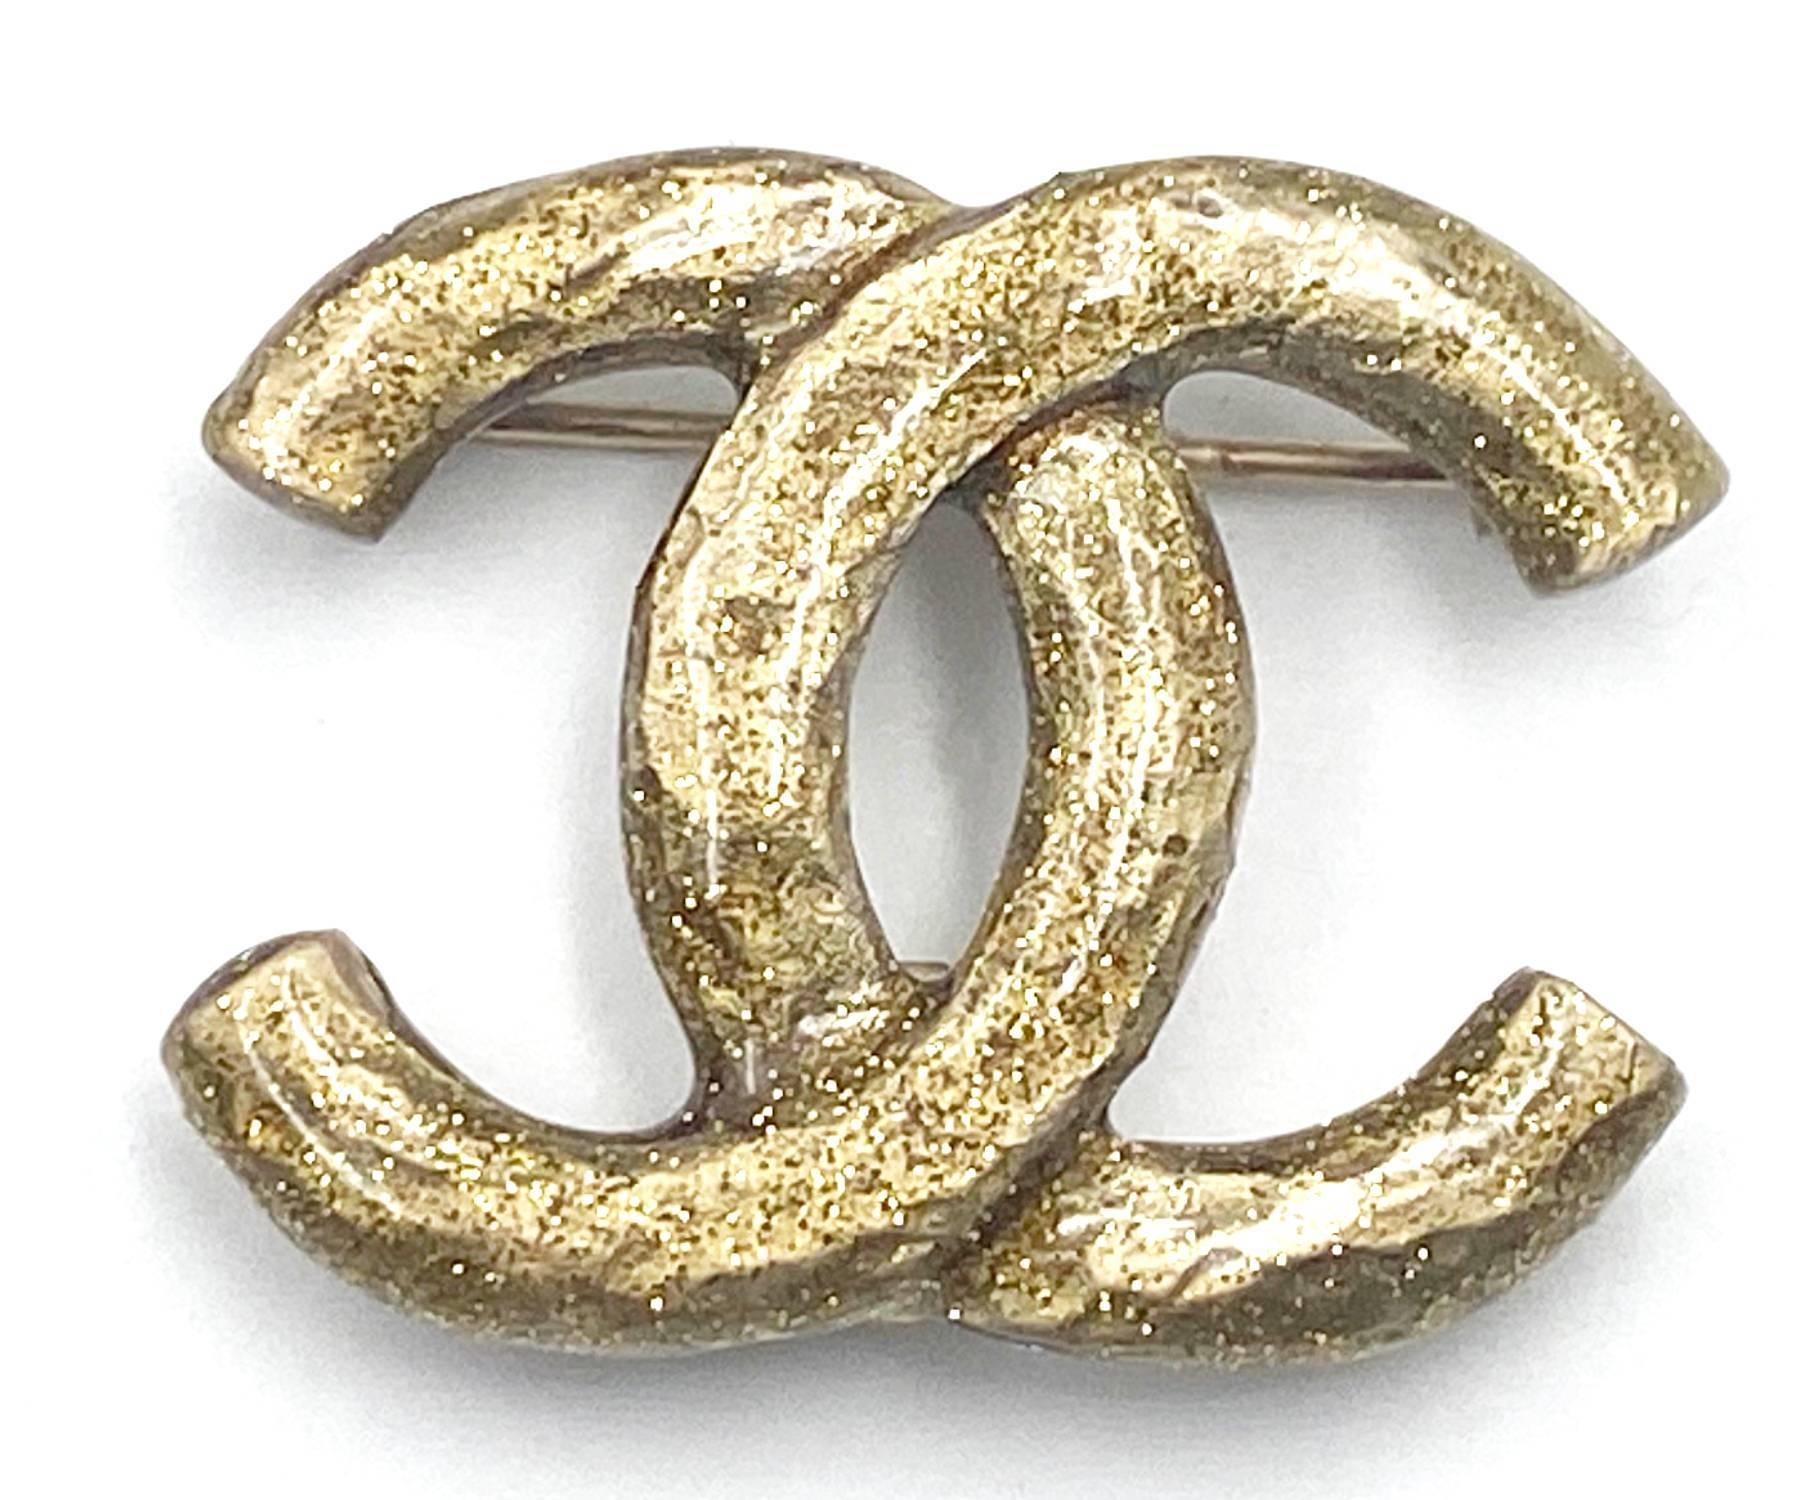 Chanel pendentif or CC paillettes petite broche

*Marqué 05
*Fabriqué en Italie

-Environ 1